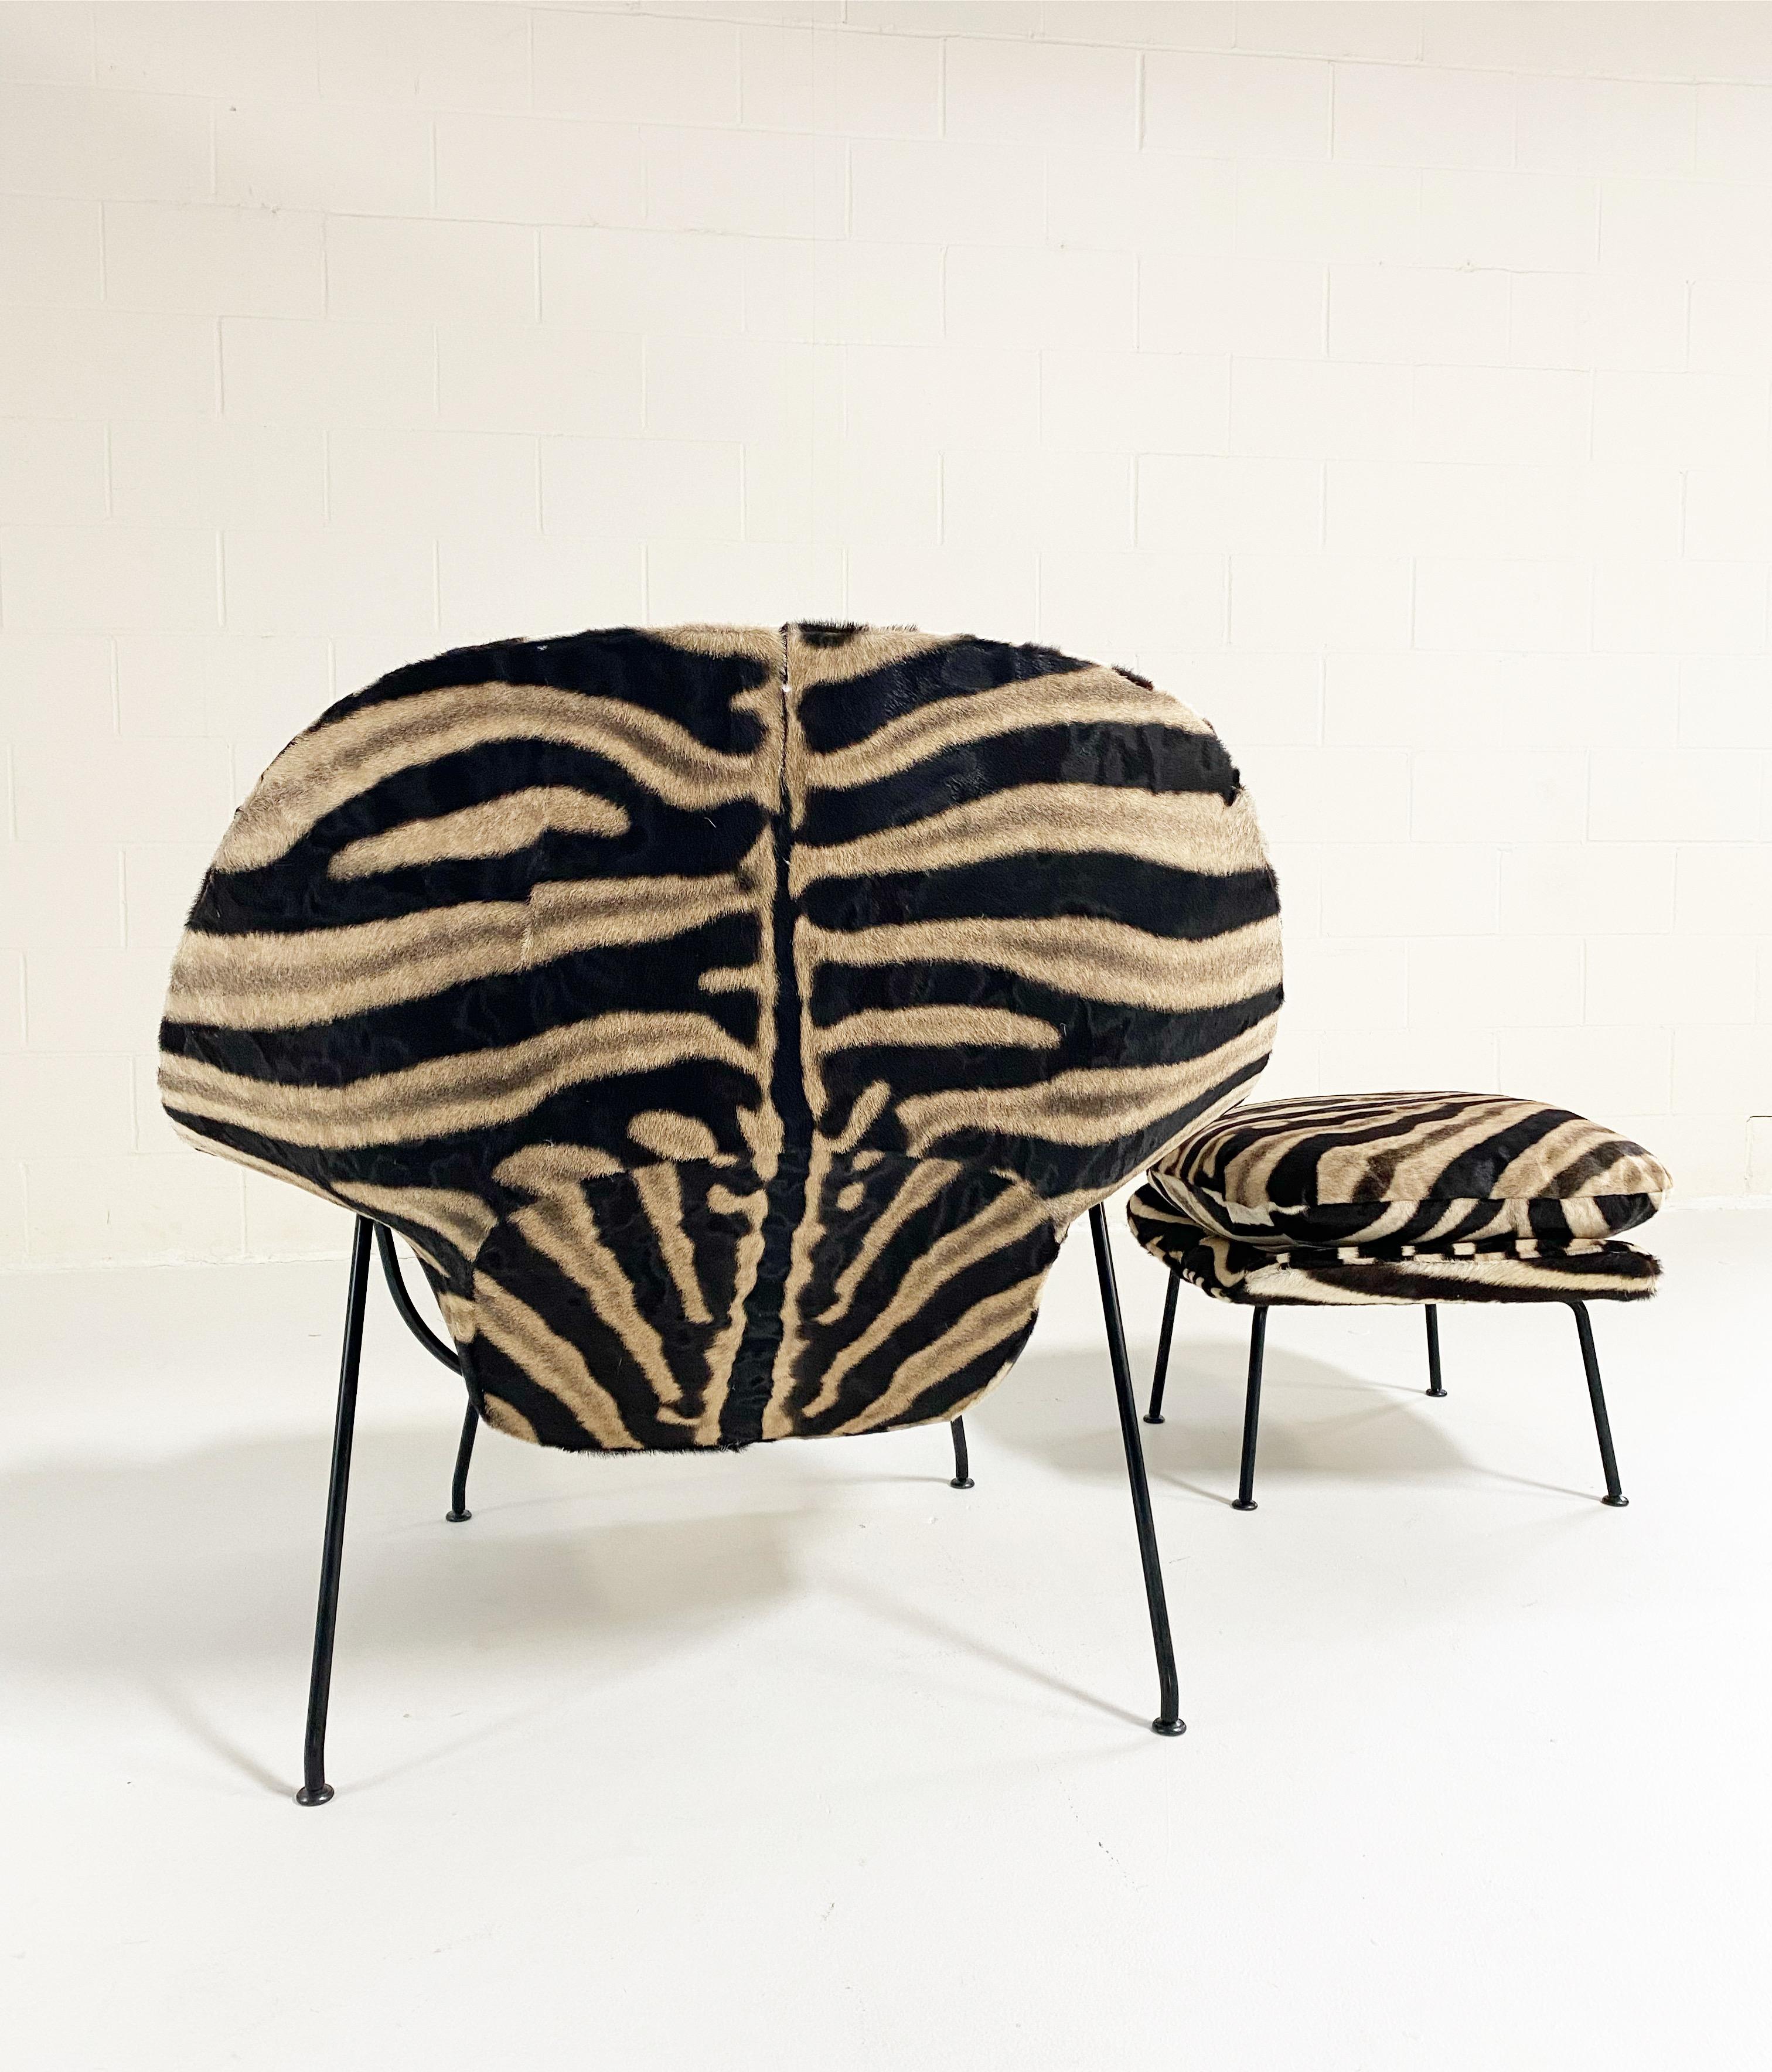 Un des favoris de l'équipe de conception de Forsyth ! Nous avons une incroyable collection de chaises vintage et d'icônes du design qui attendent une nouvelle vie. Nos chaises utérines recyclées font partie de nos modèles les plus populaires. 

Ce